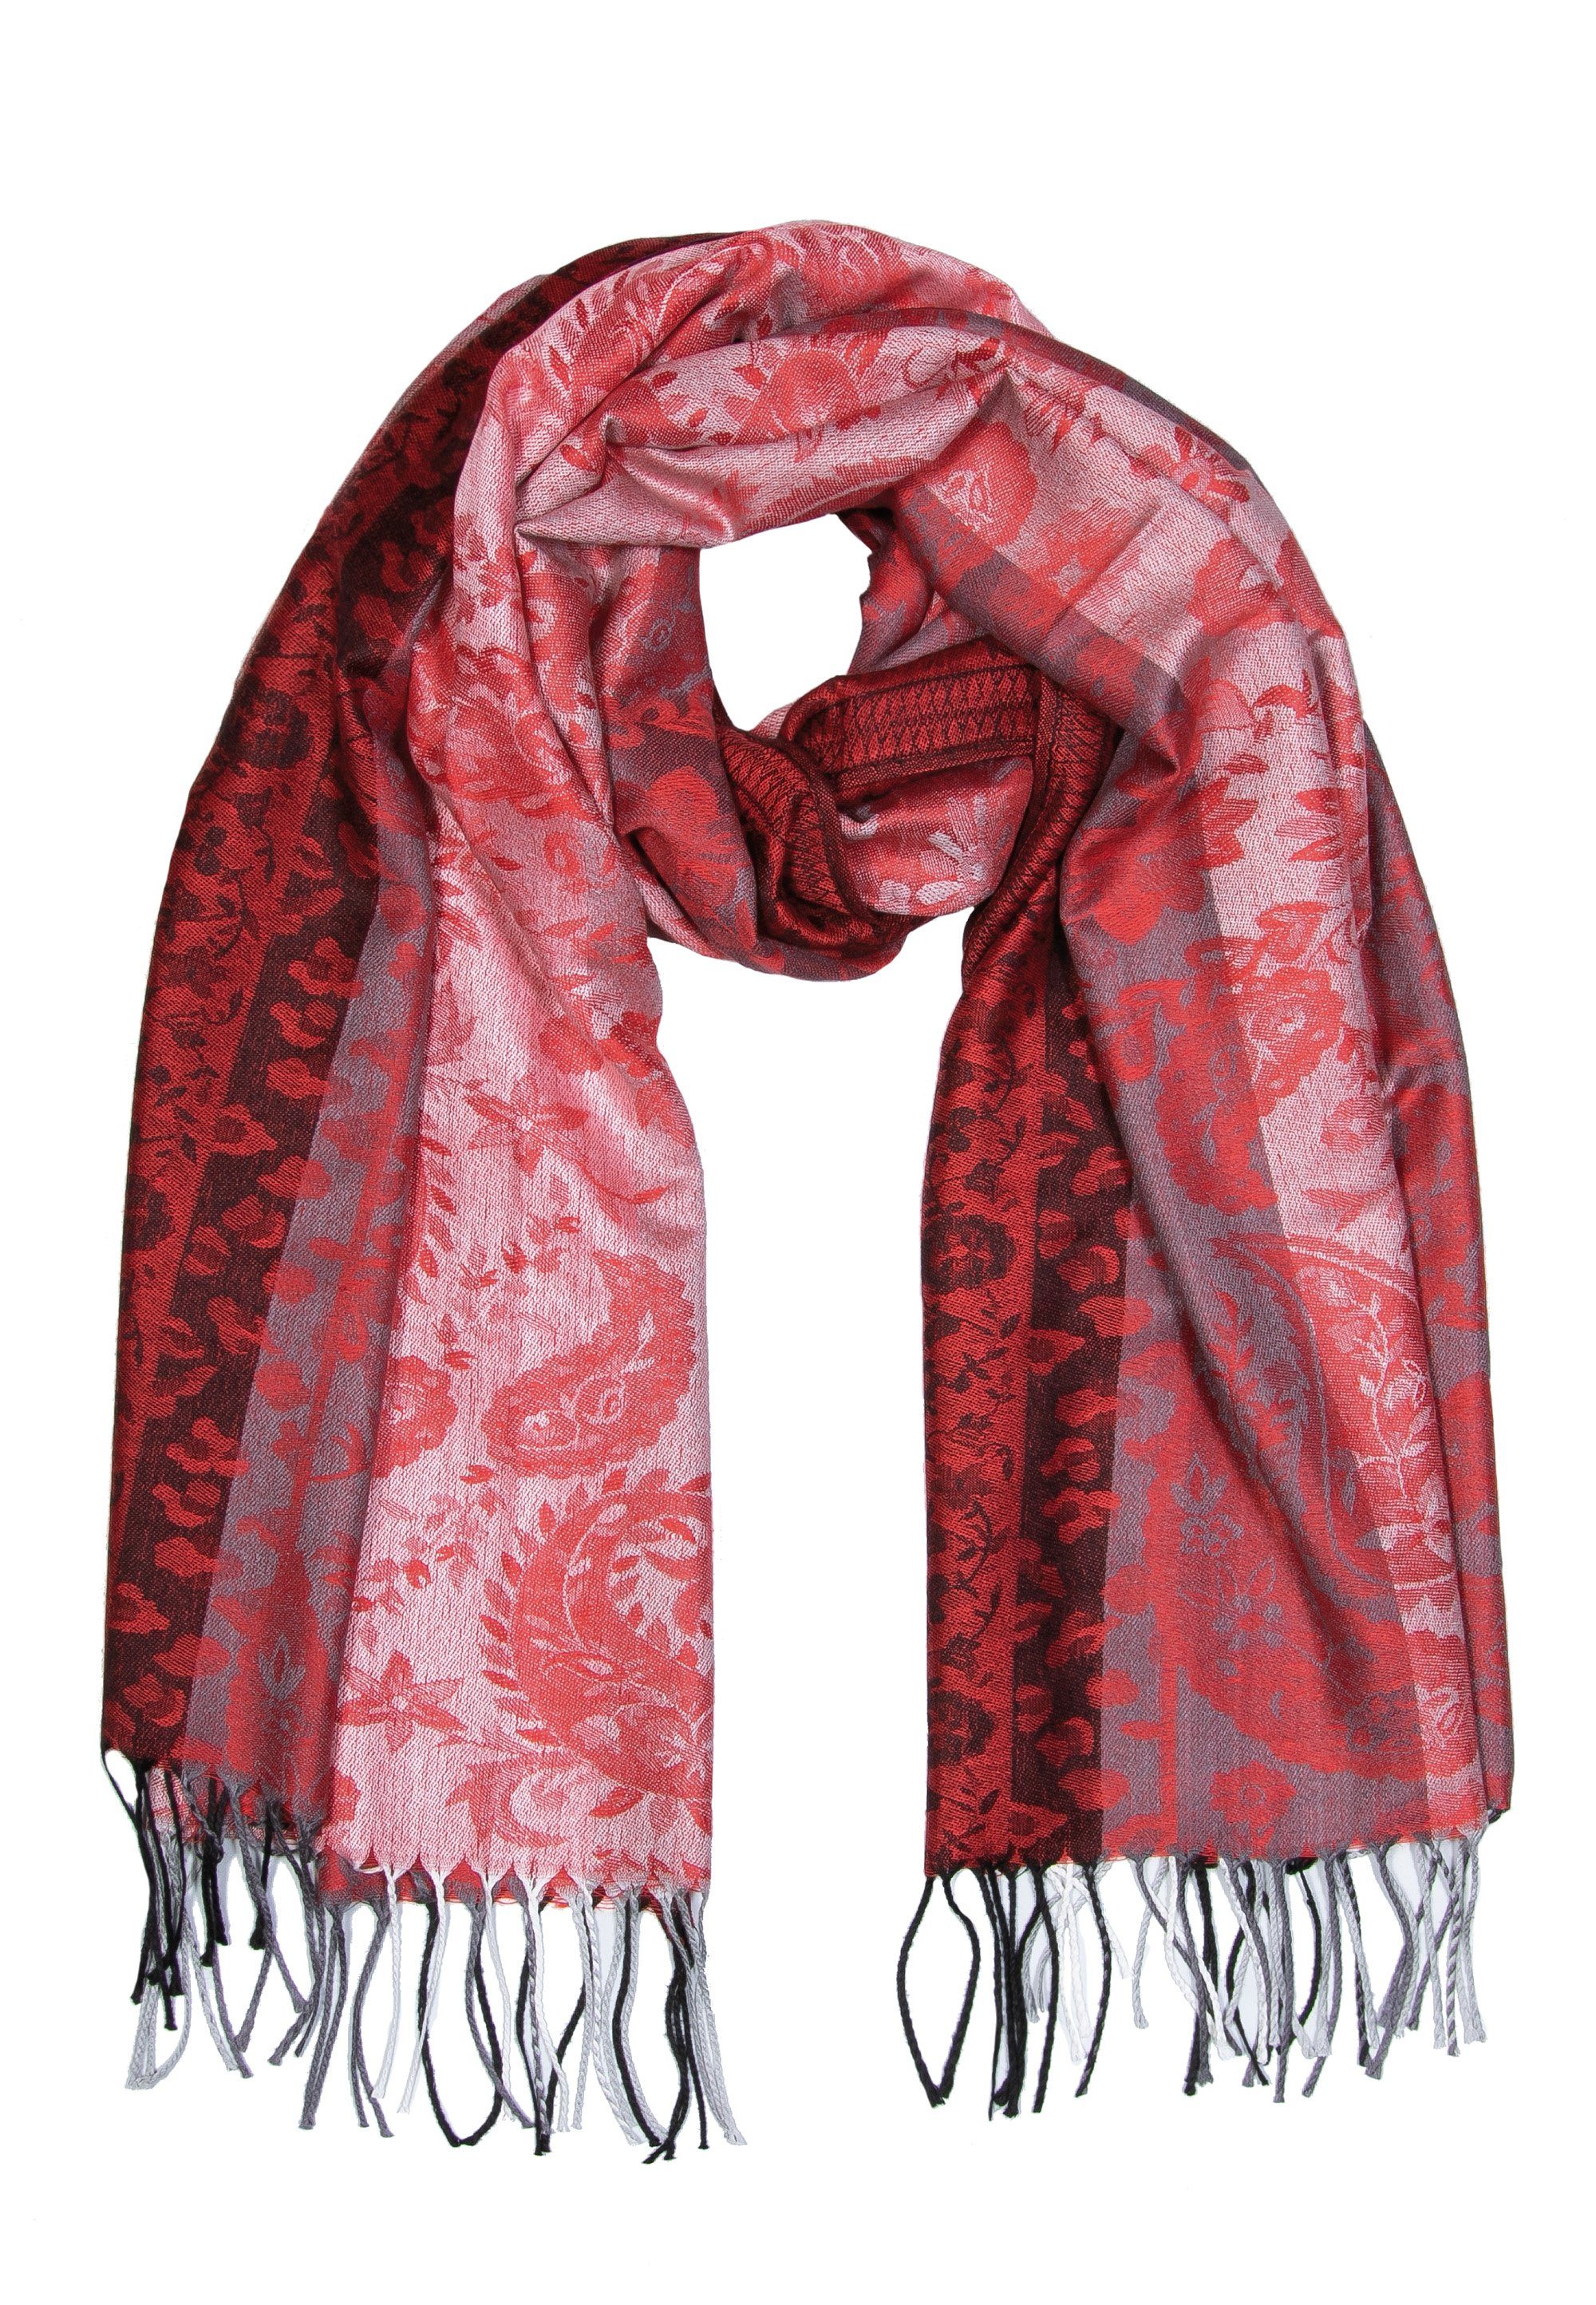 Romantik Schal Sehr Farben, Modeschal mit hochwertiges Material Rot Design Goodman lebendigen